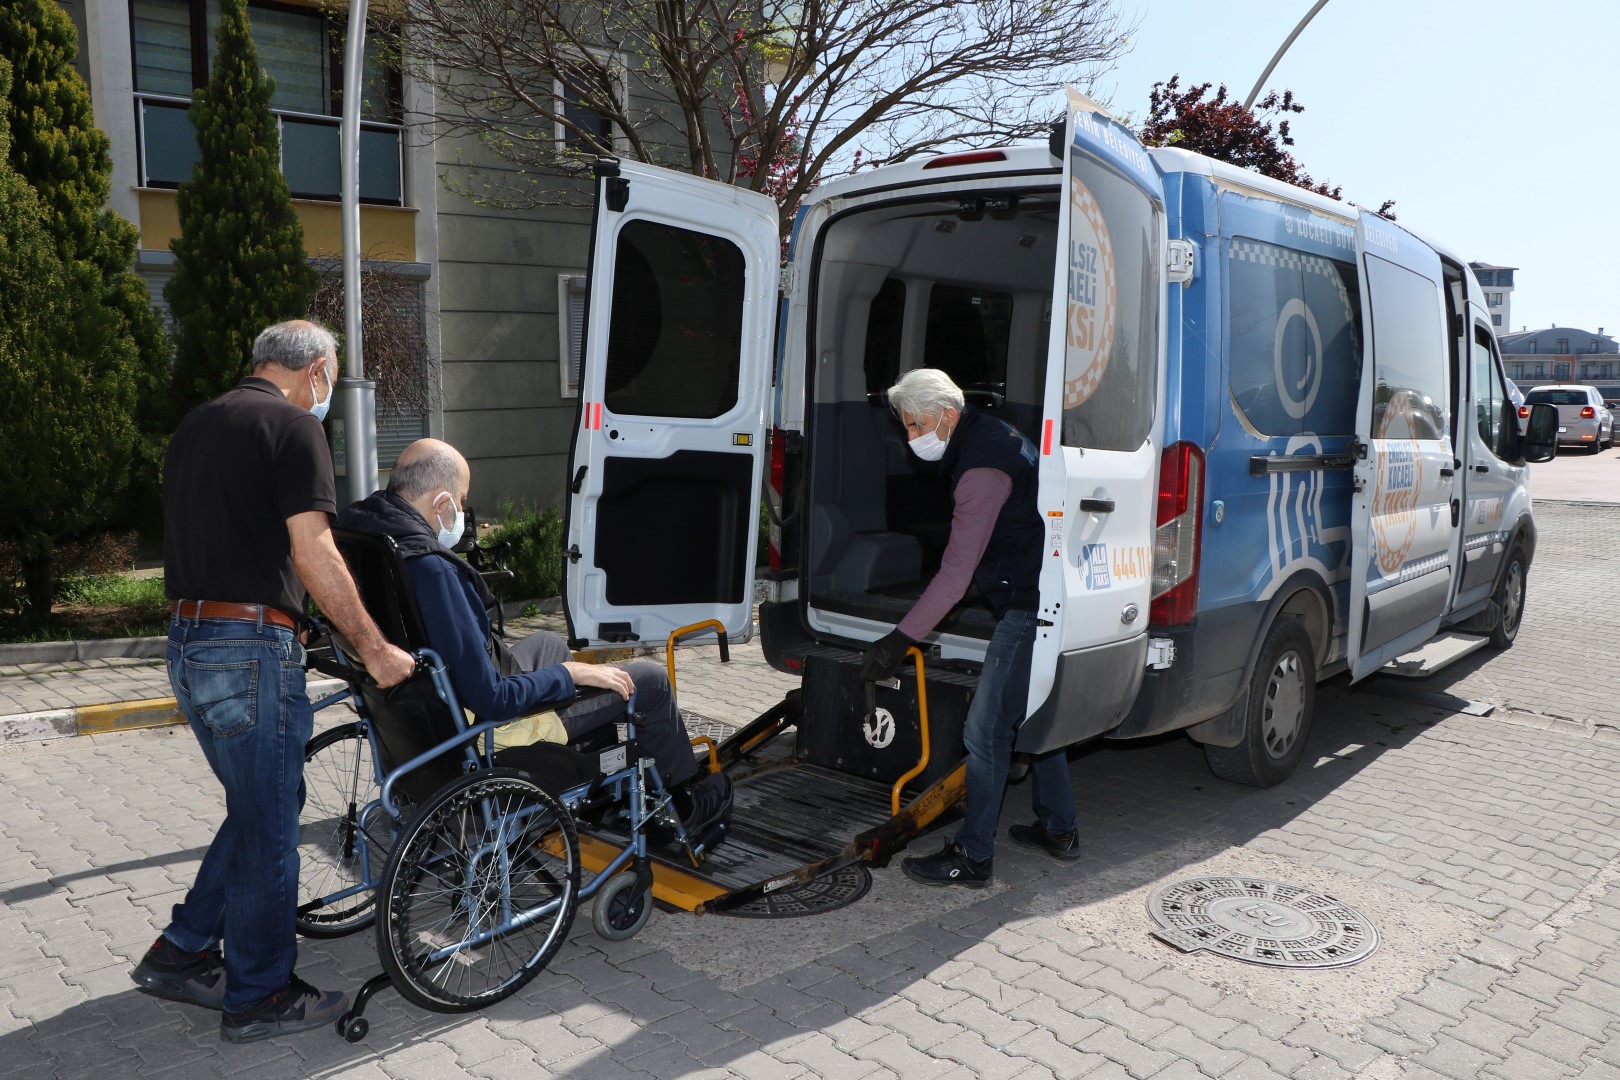 Kocaeli Büyükşehir Belediyesi, sunmuş olduğu “Engelsiz Taksi” hizmeti ile engelli vatandaşların günlük hayatlarının kolaylaşmasına imkân sağlıyor.